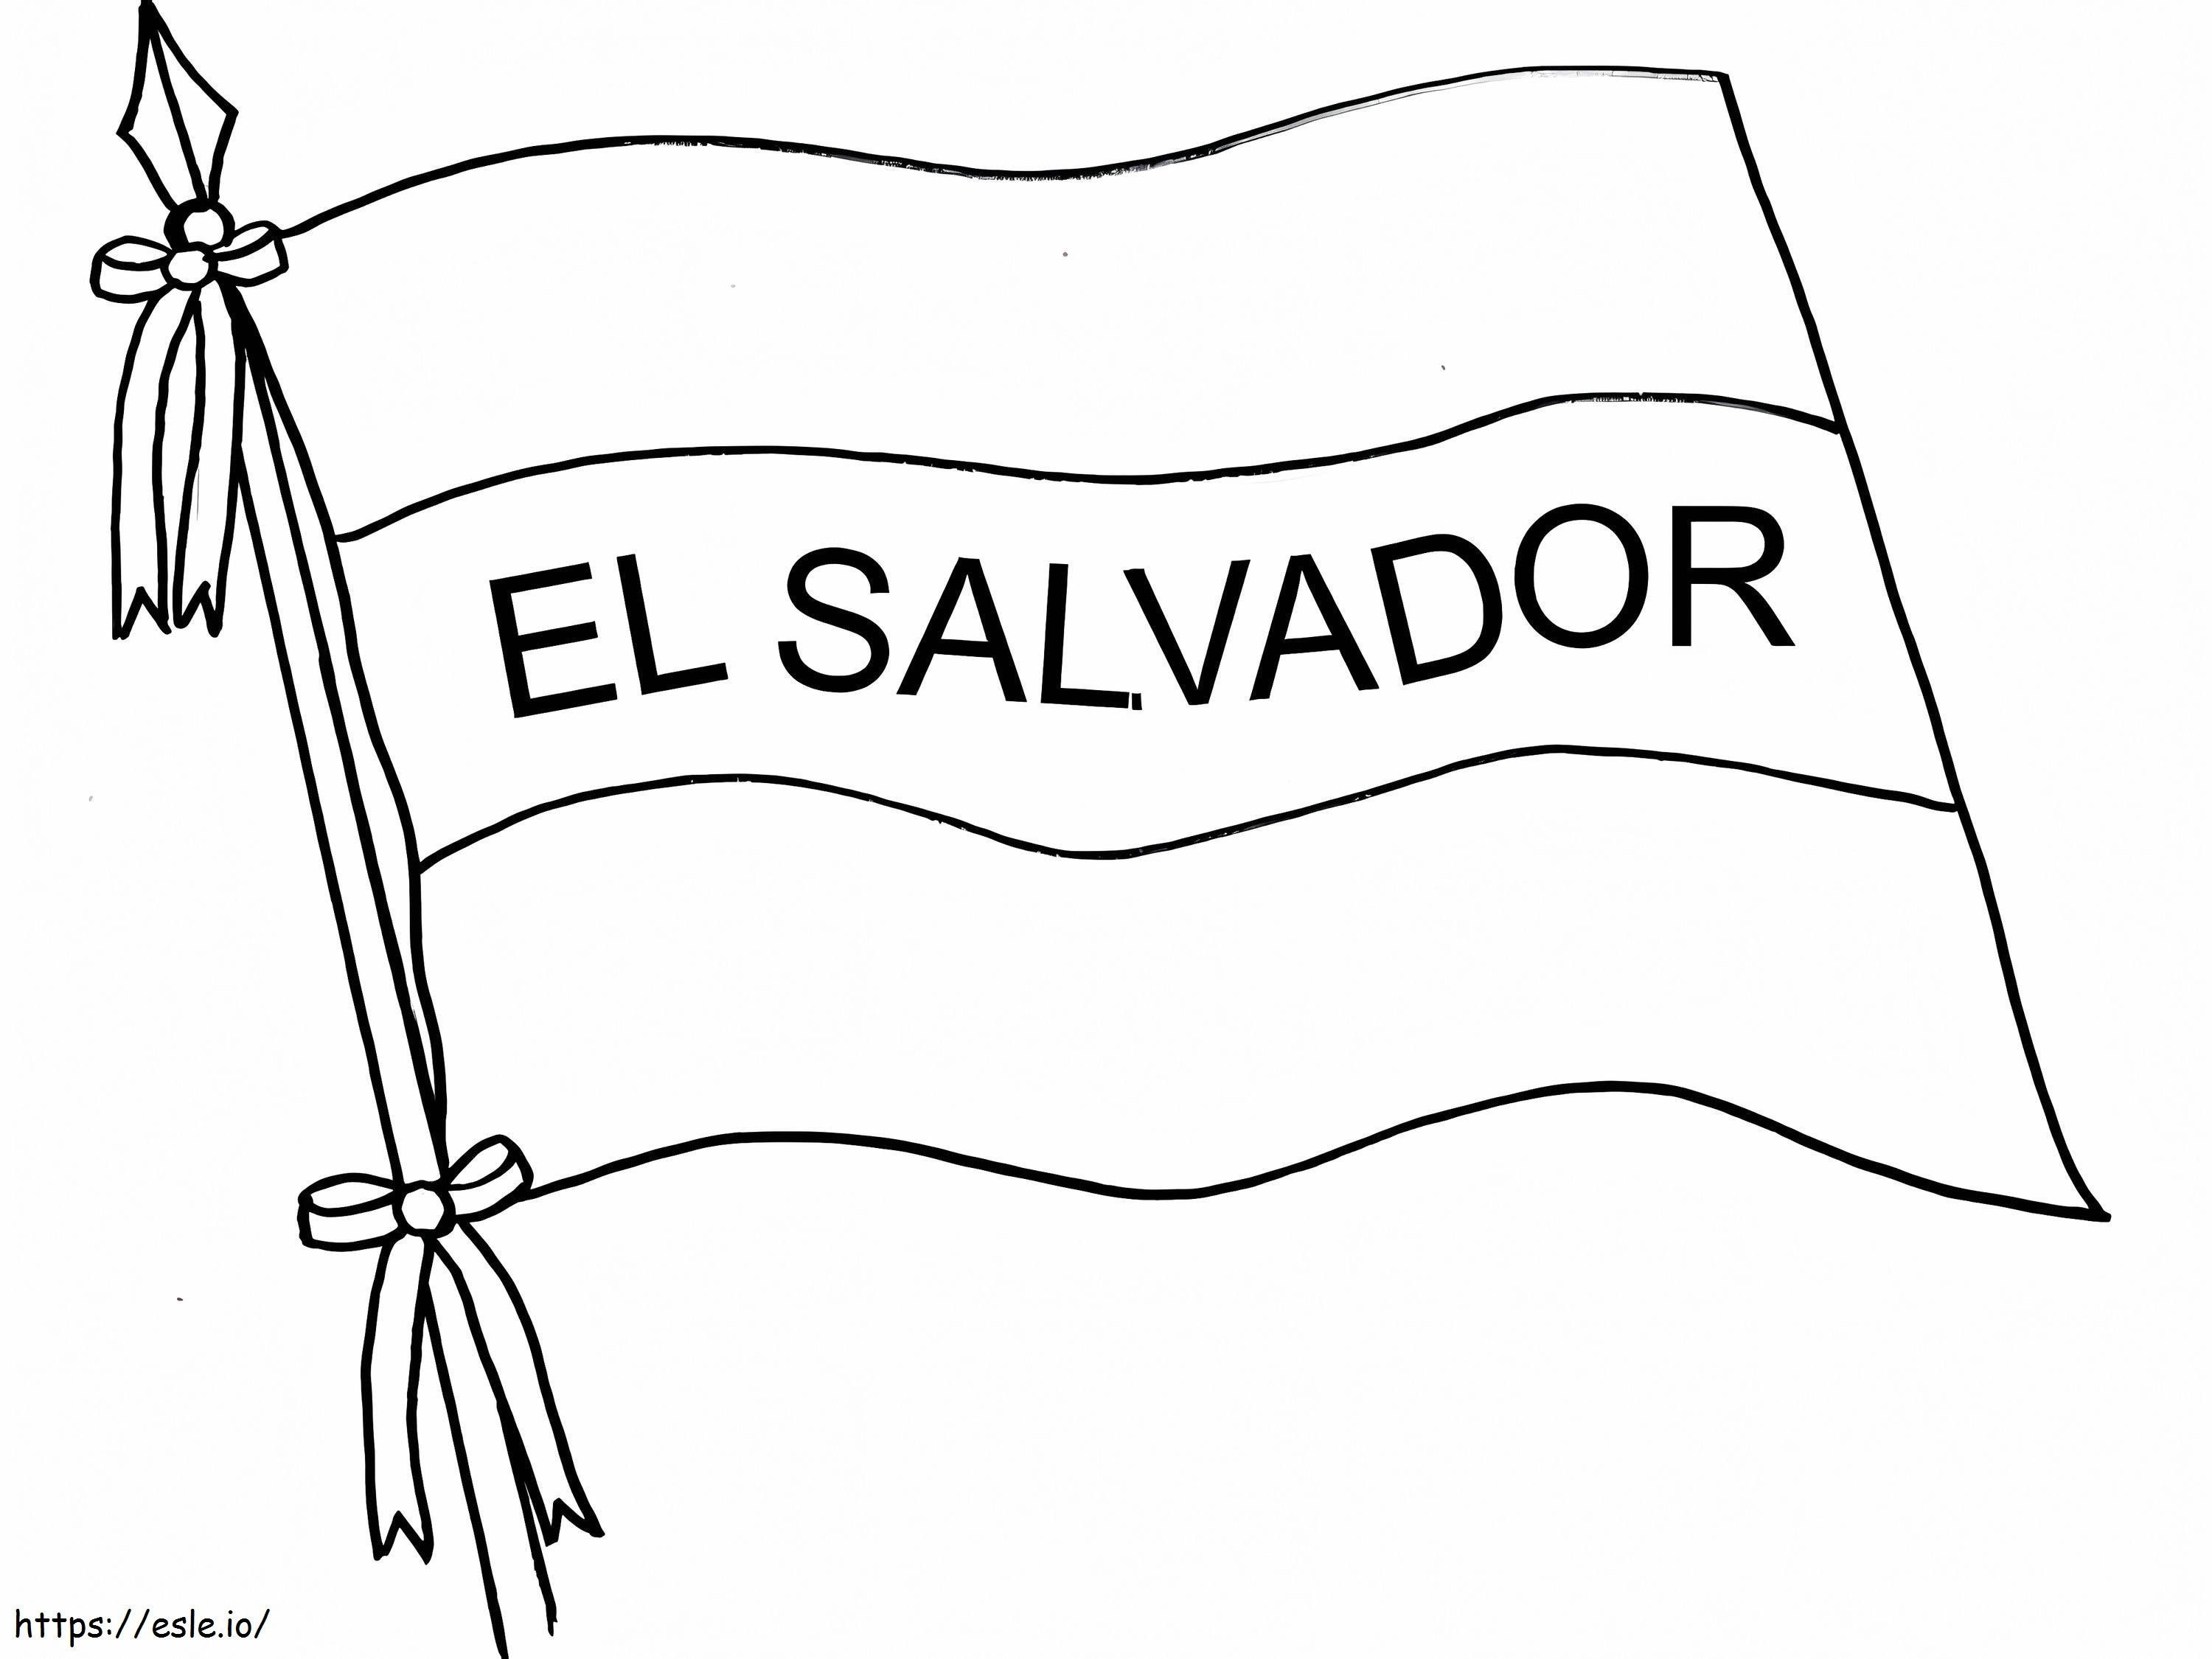 El Salvador zászlaja kifestő